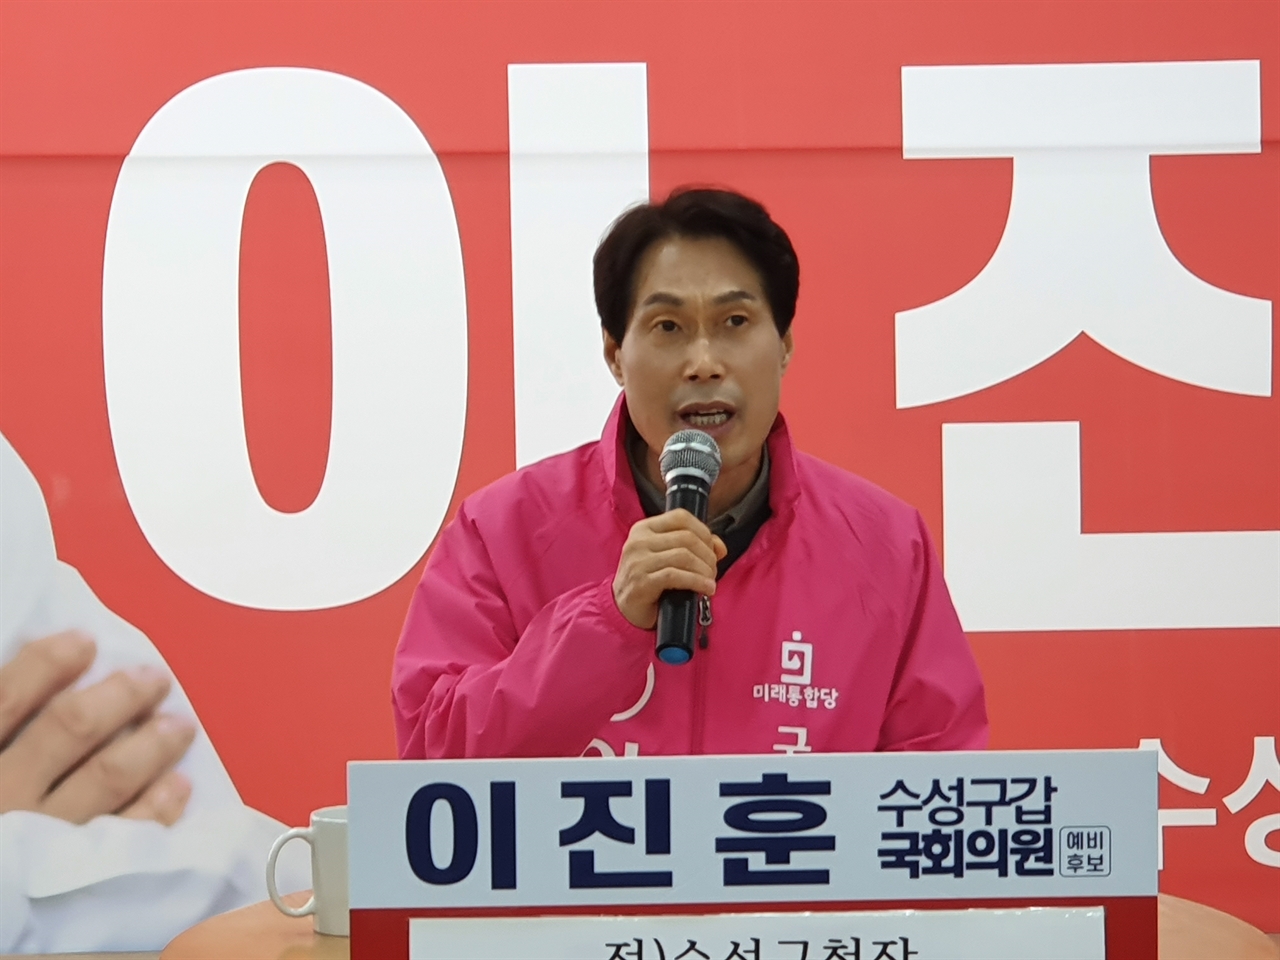 이진훈 미래통합당 대구 수성구갑 예비후보가 오는 17일 무소속 출마를 선언하기로 했다.